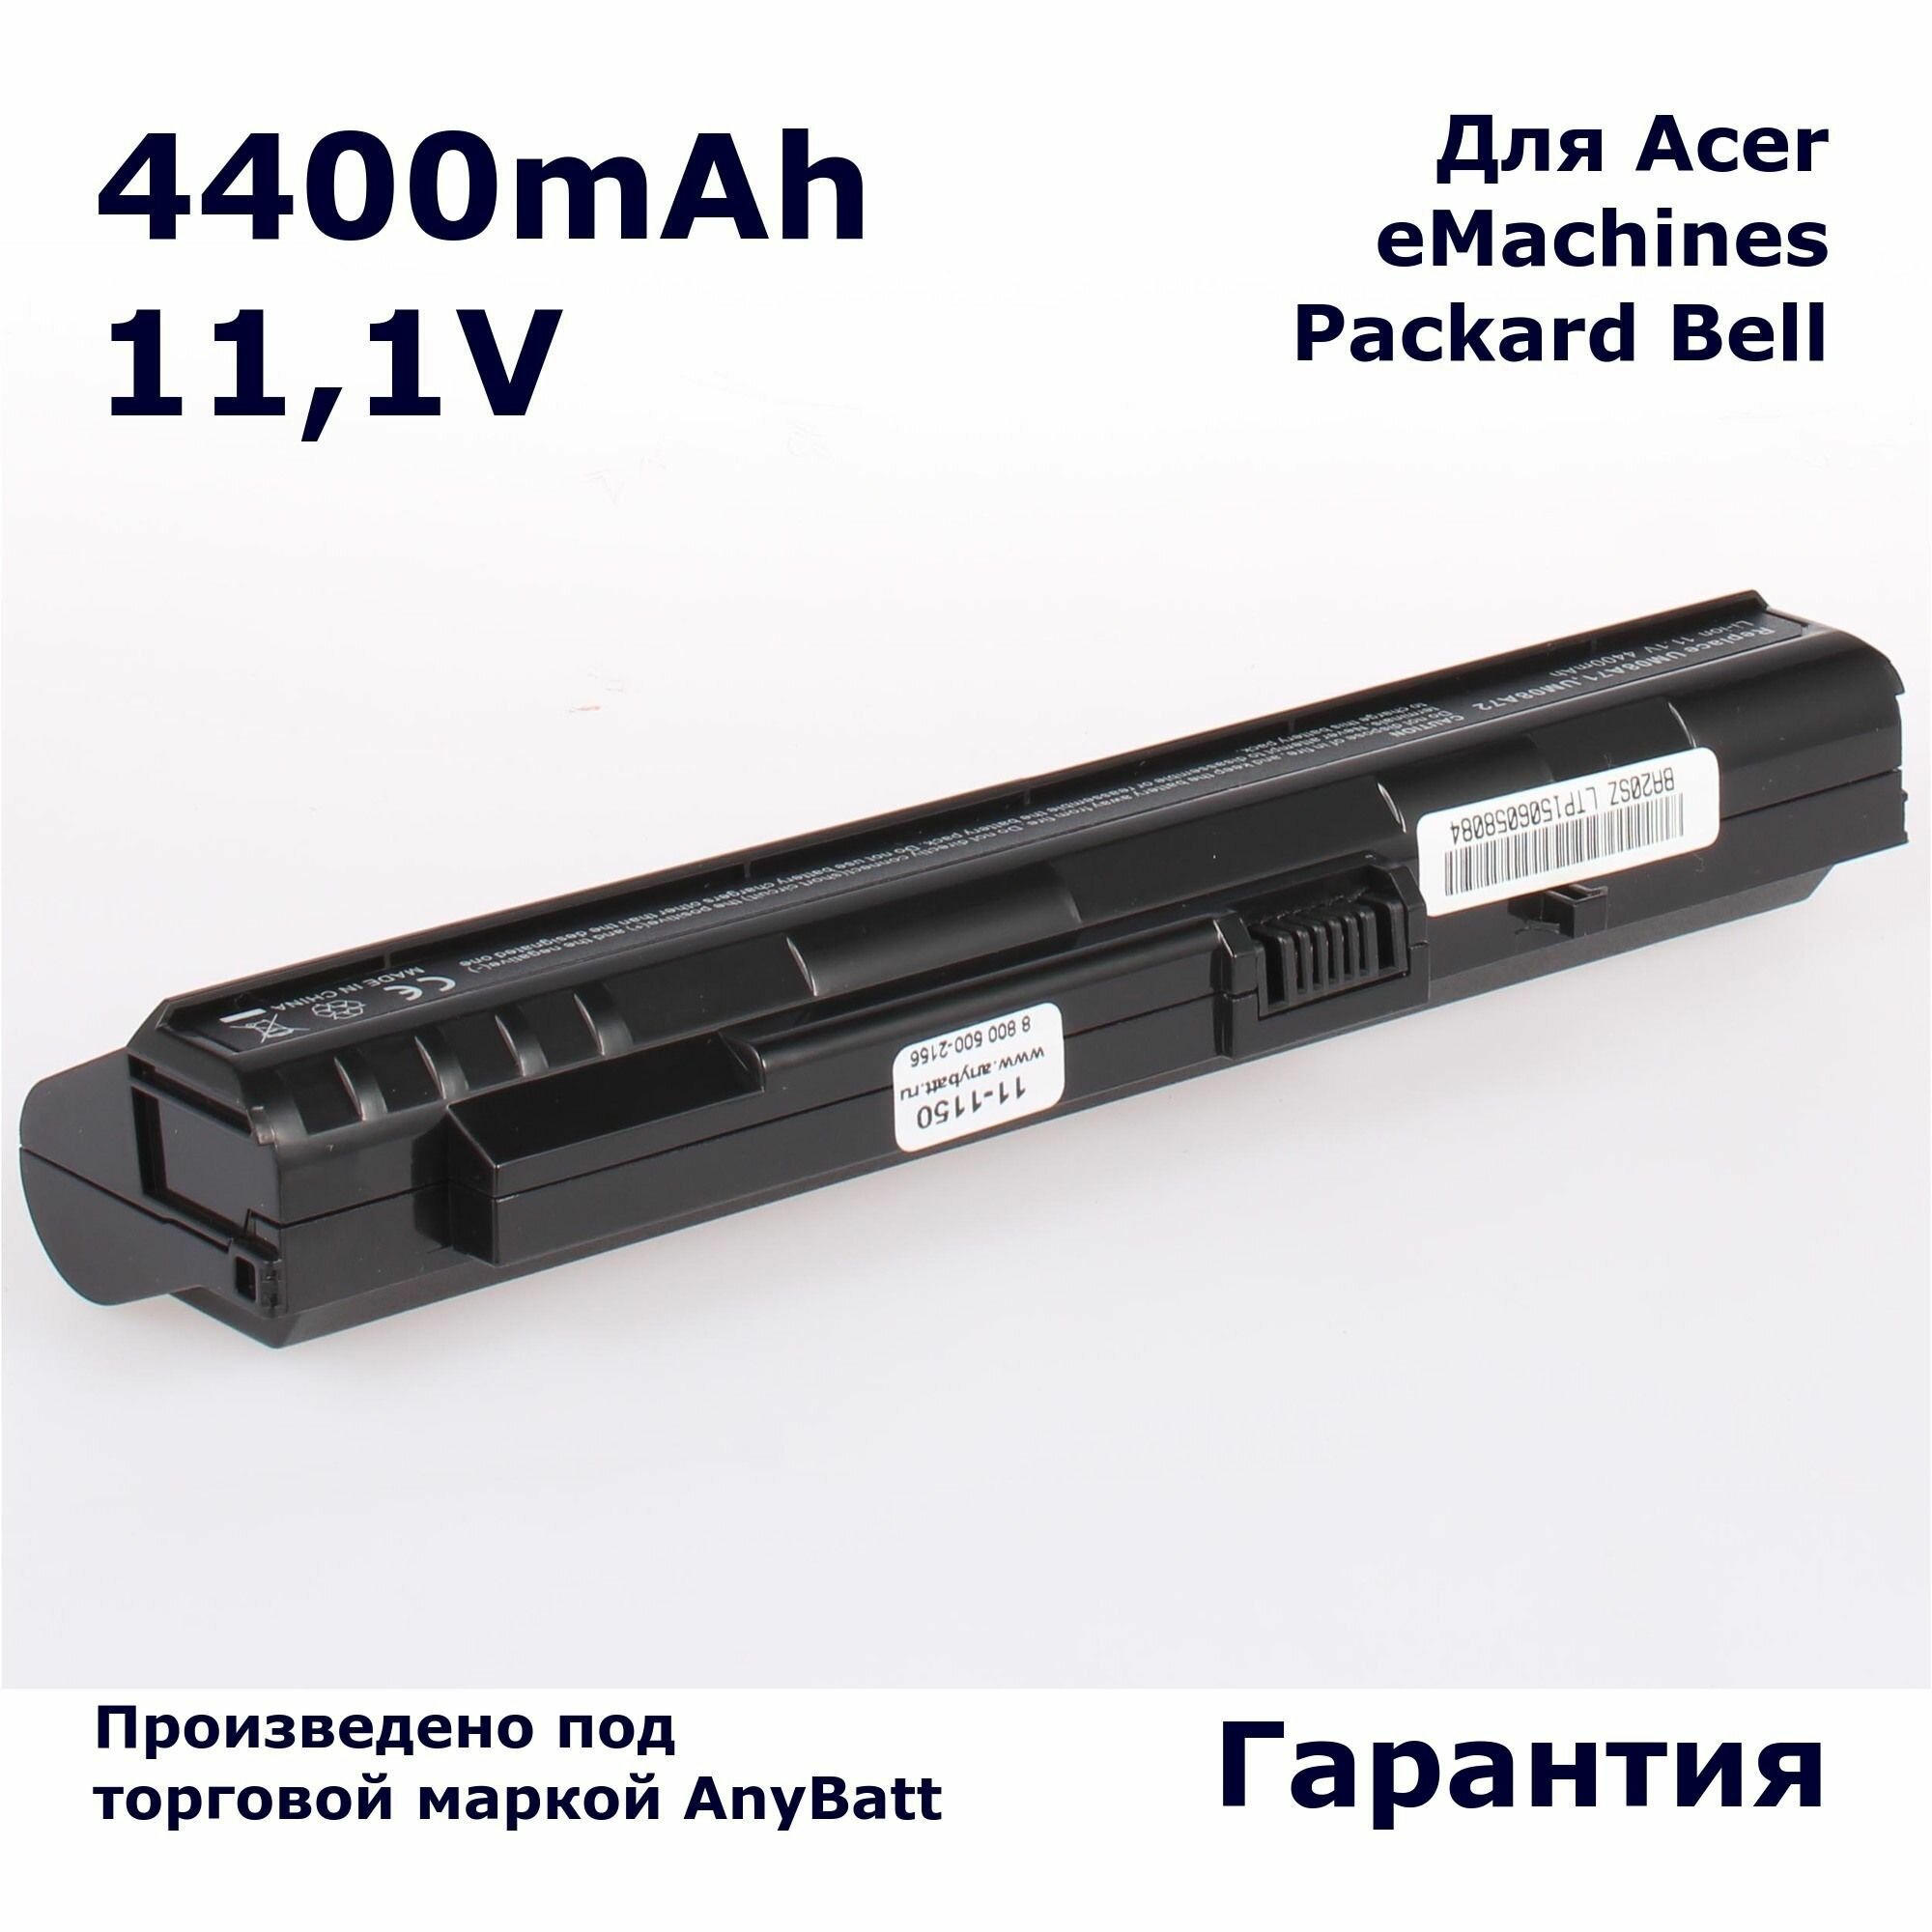 Аккумулятор AnyBatt 4400mAh, для UM08A31 UM08A51 UM08B71 UM08A41 UM08A71 UM08A73 UM08B74 UM08A72 UM08B31 UM08B72 UM08A52 UM08B52 UM08B73